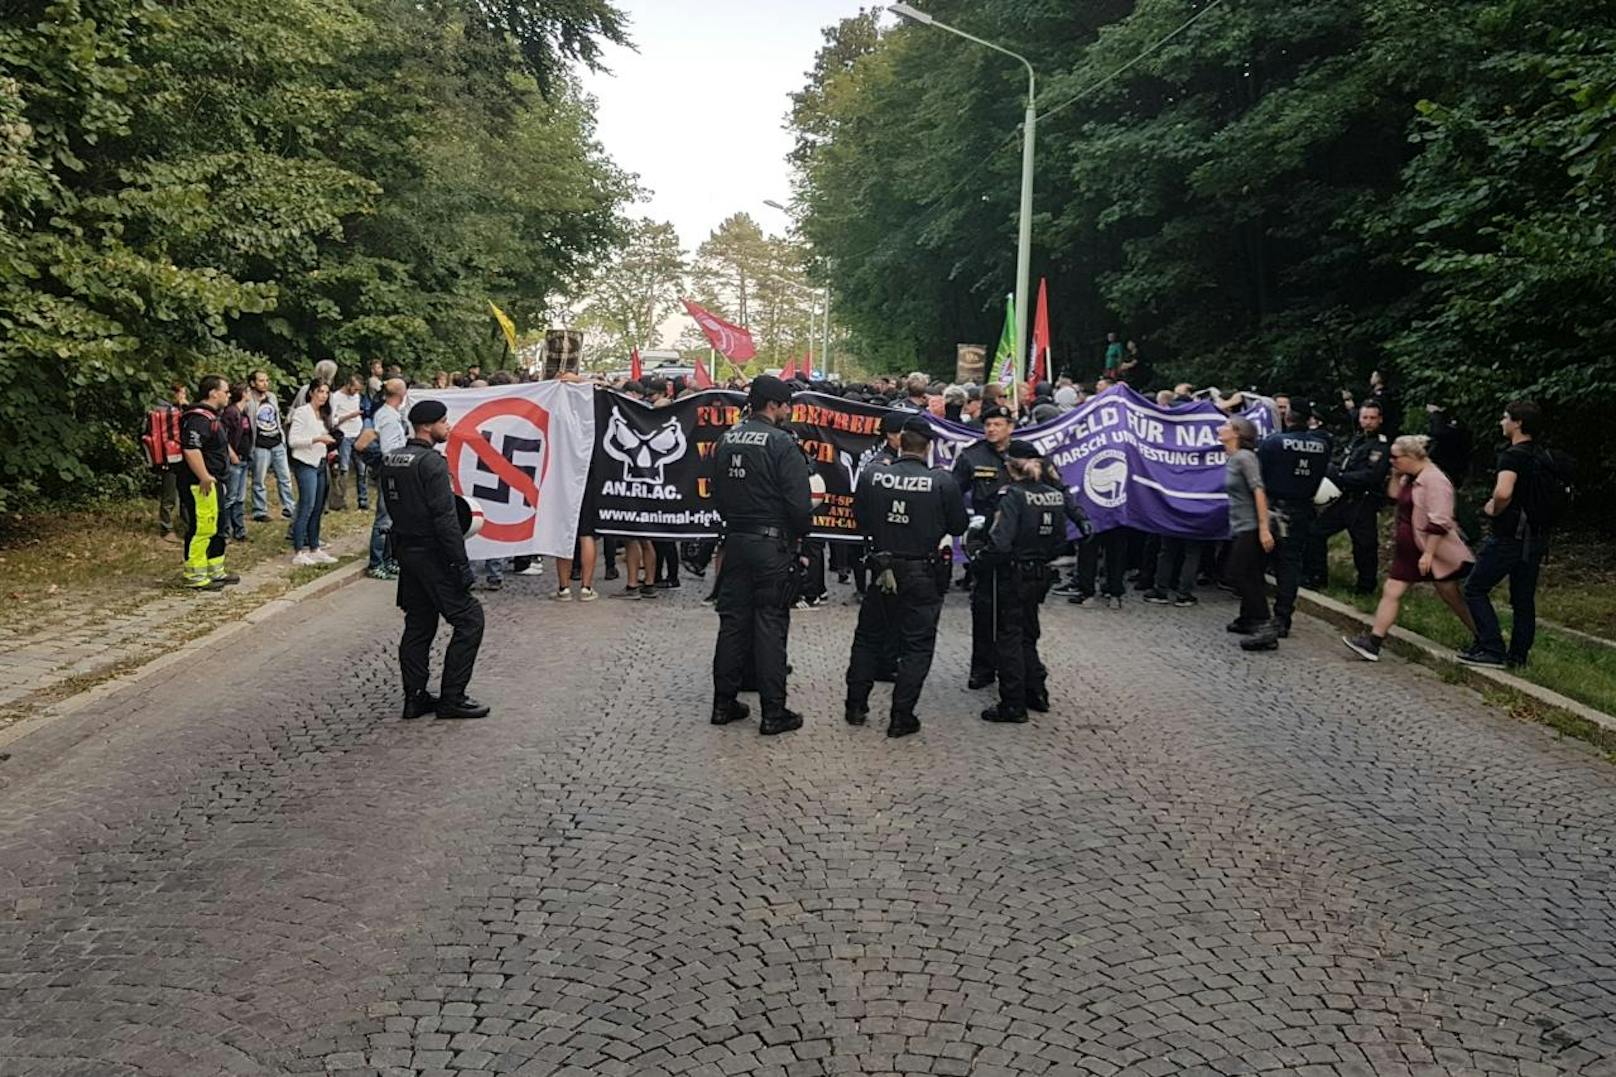 Alljährlich marschieren die Identitären auf den Wiener Kahlenberg: Die Antifa rief zur Gegendemo auf.